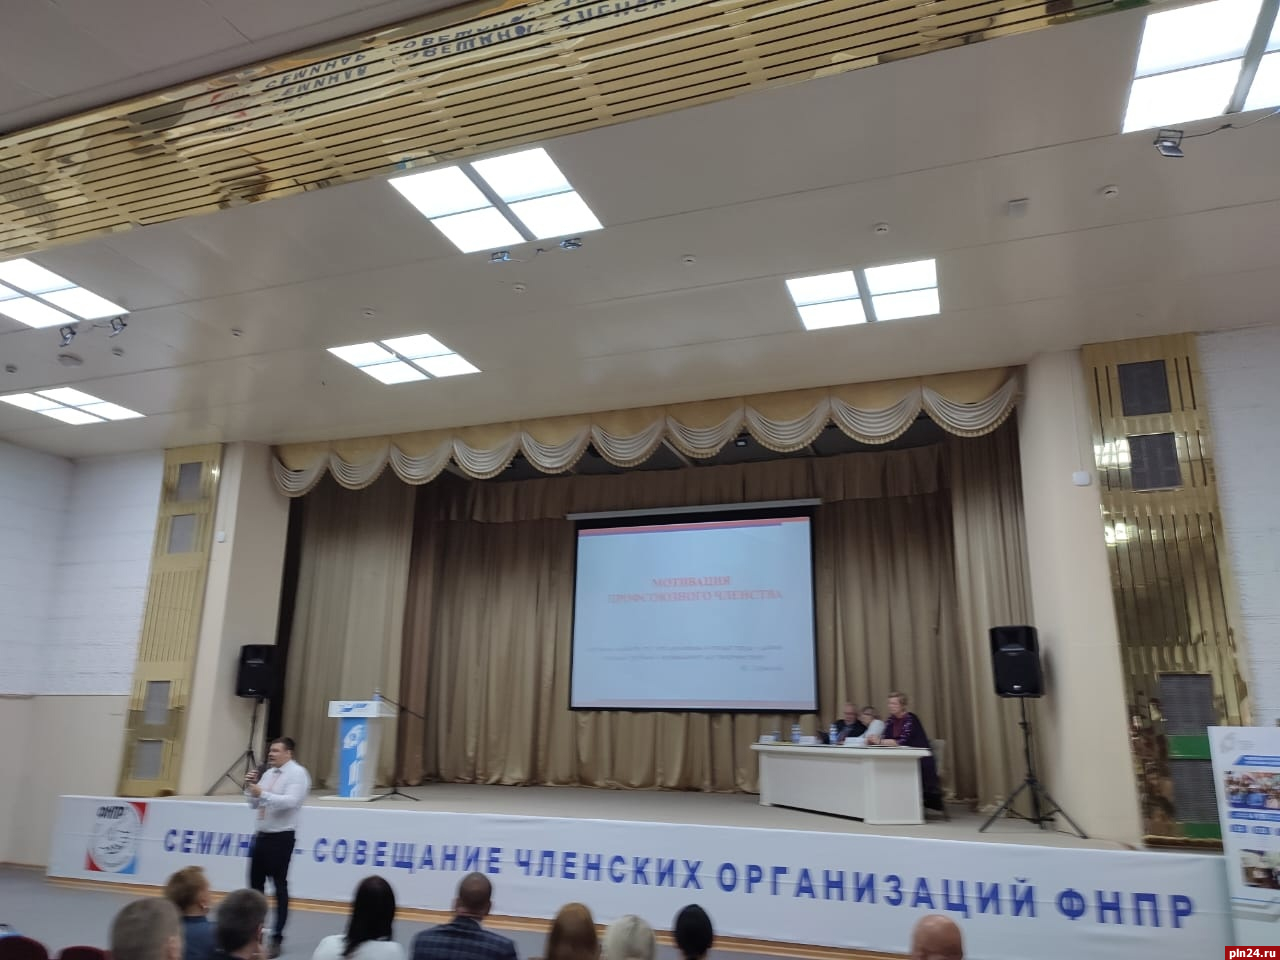 Зампредседателя Псковского облсовпрофа отправился на семинар по оргработе в Казань